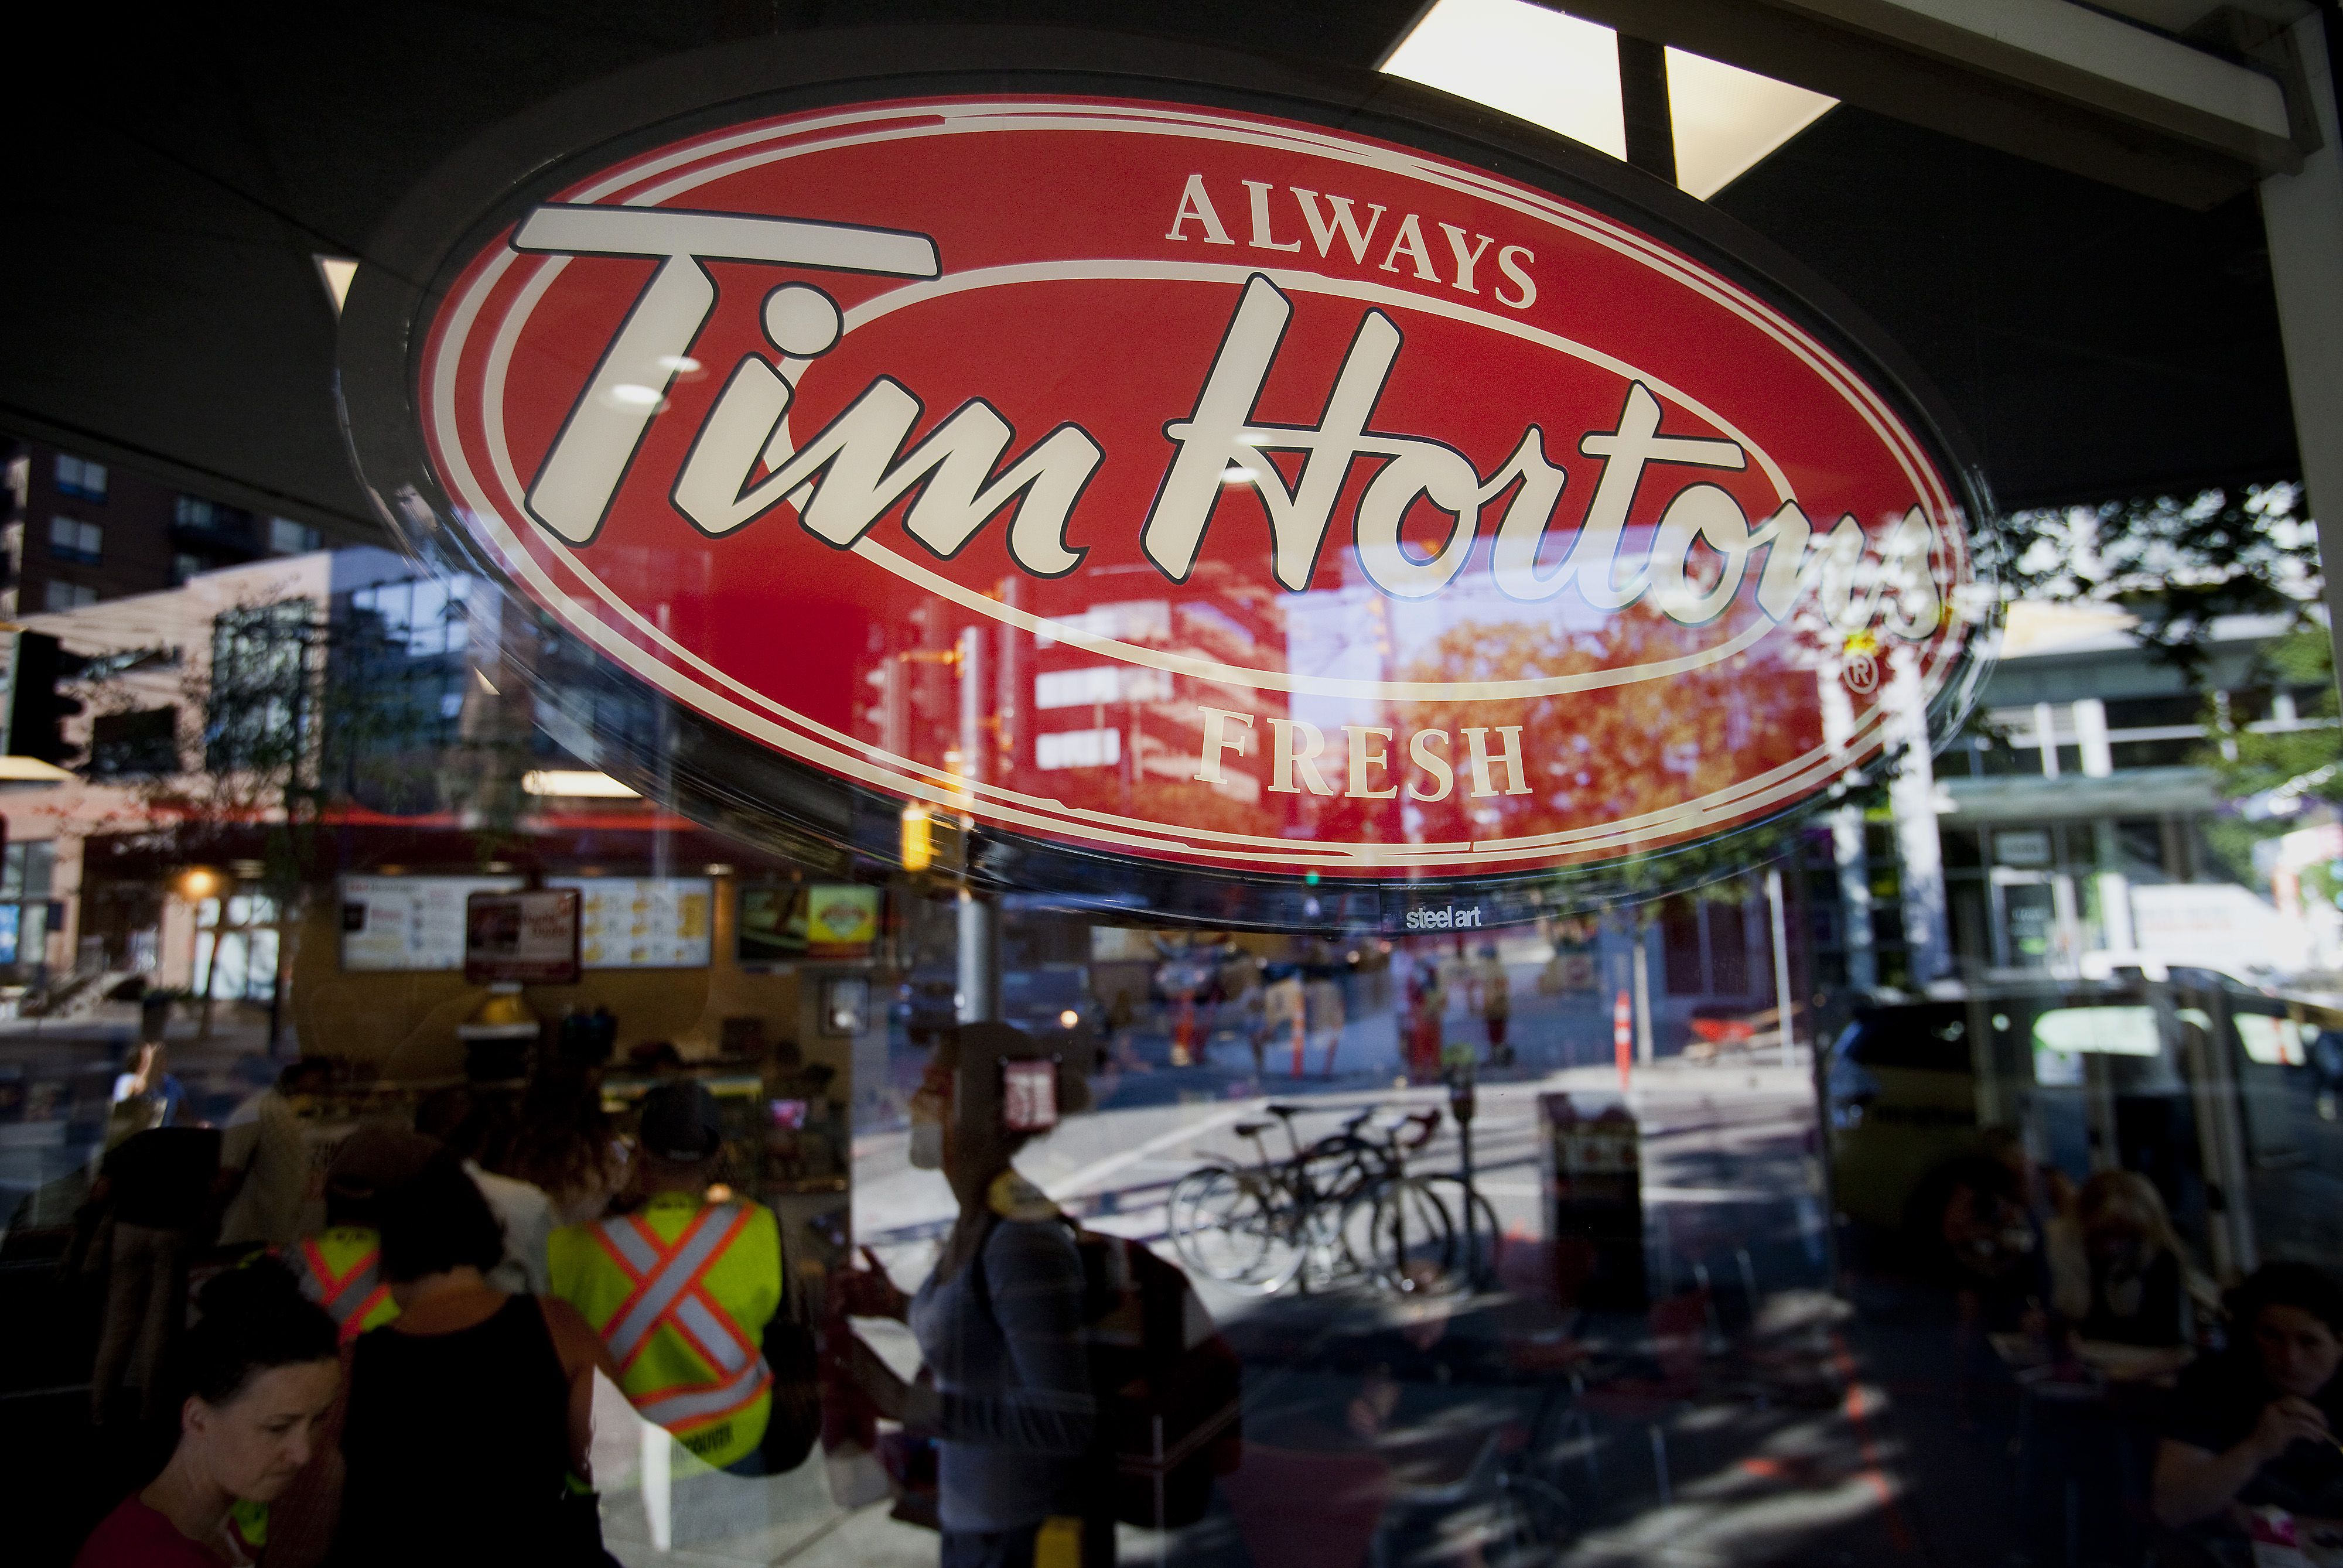 Quem é a Tim Hortons – que o Burger King comprou no Canadá